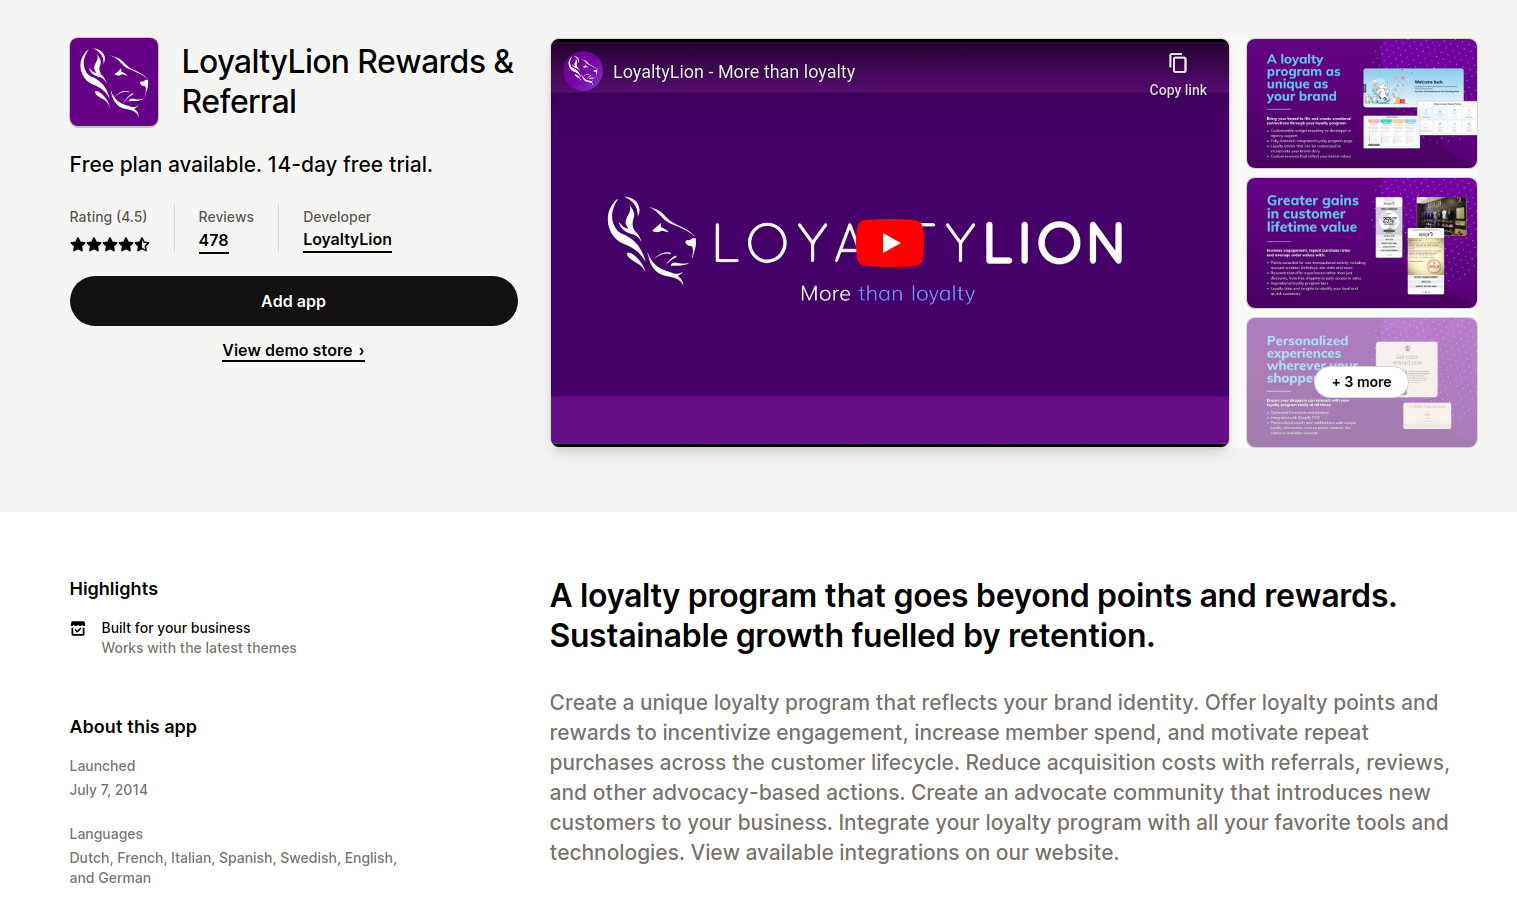 Loyalty Lion Rewards & Referral